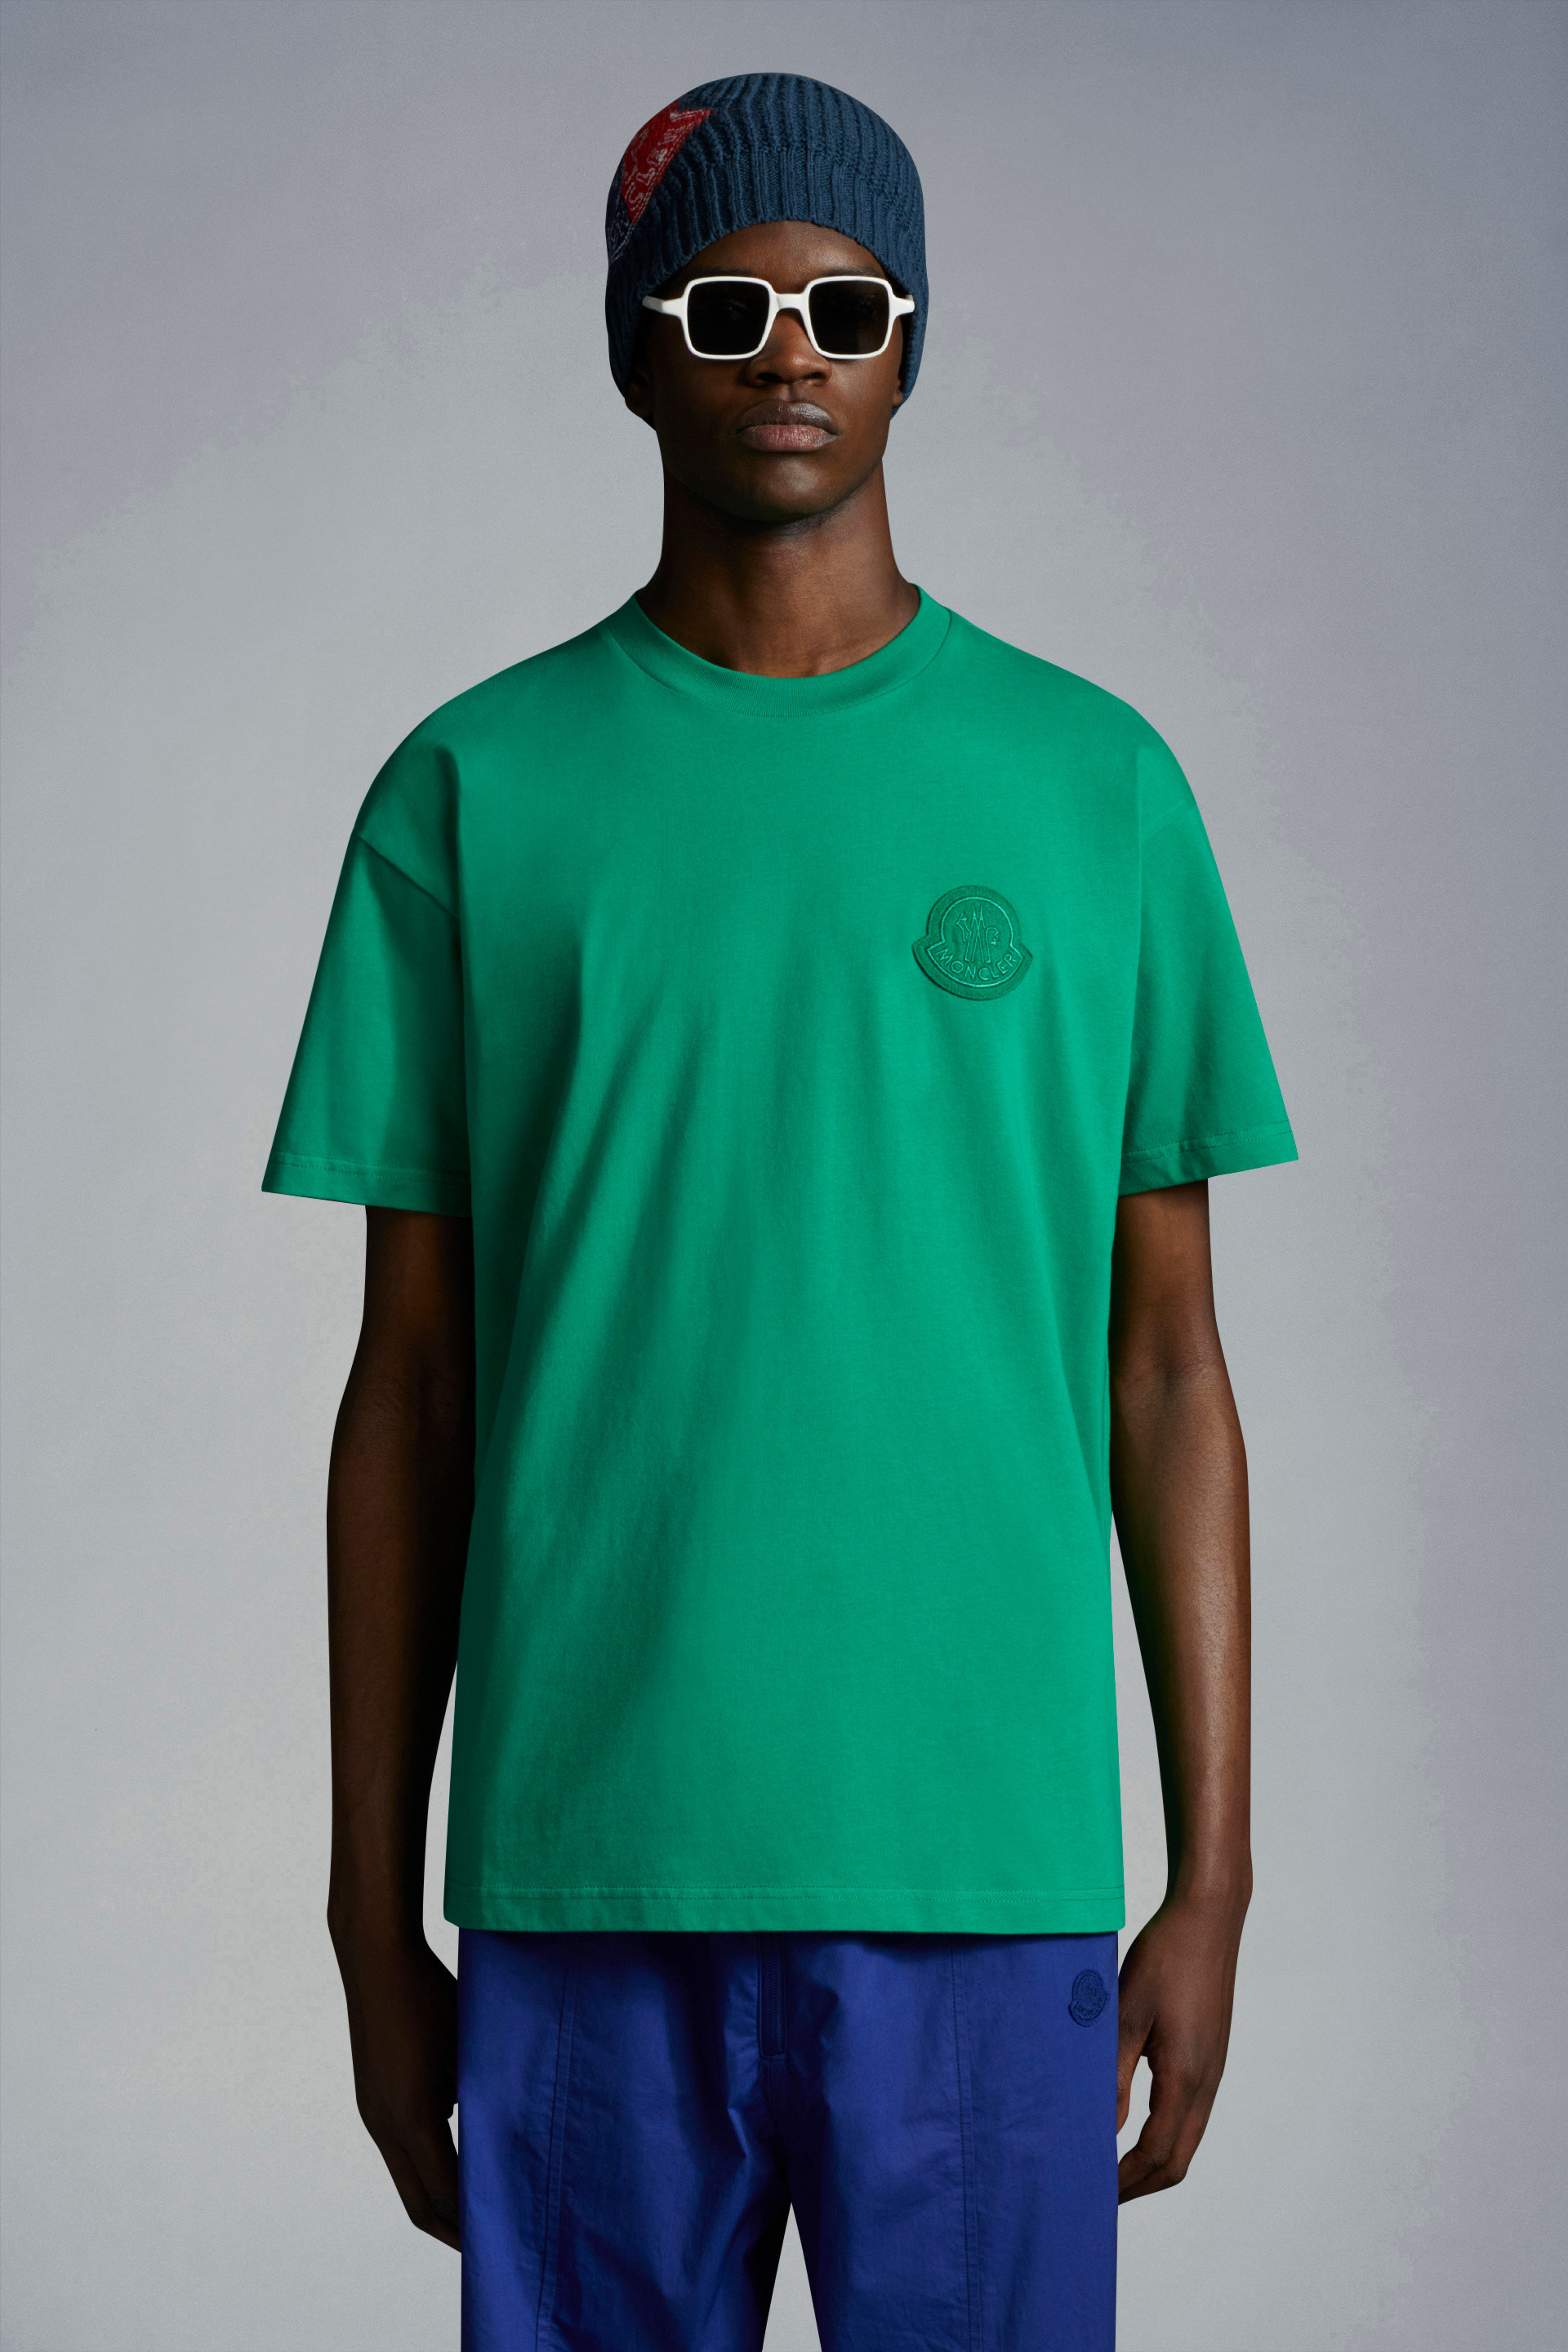 フォレストグリーン Tシャツ : 2 Moncler 1952 男装 向けの Genius | モンクレール